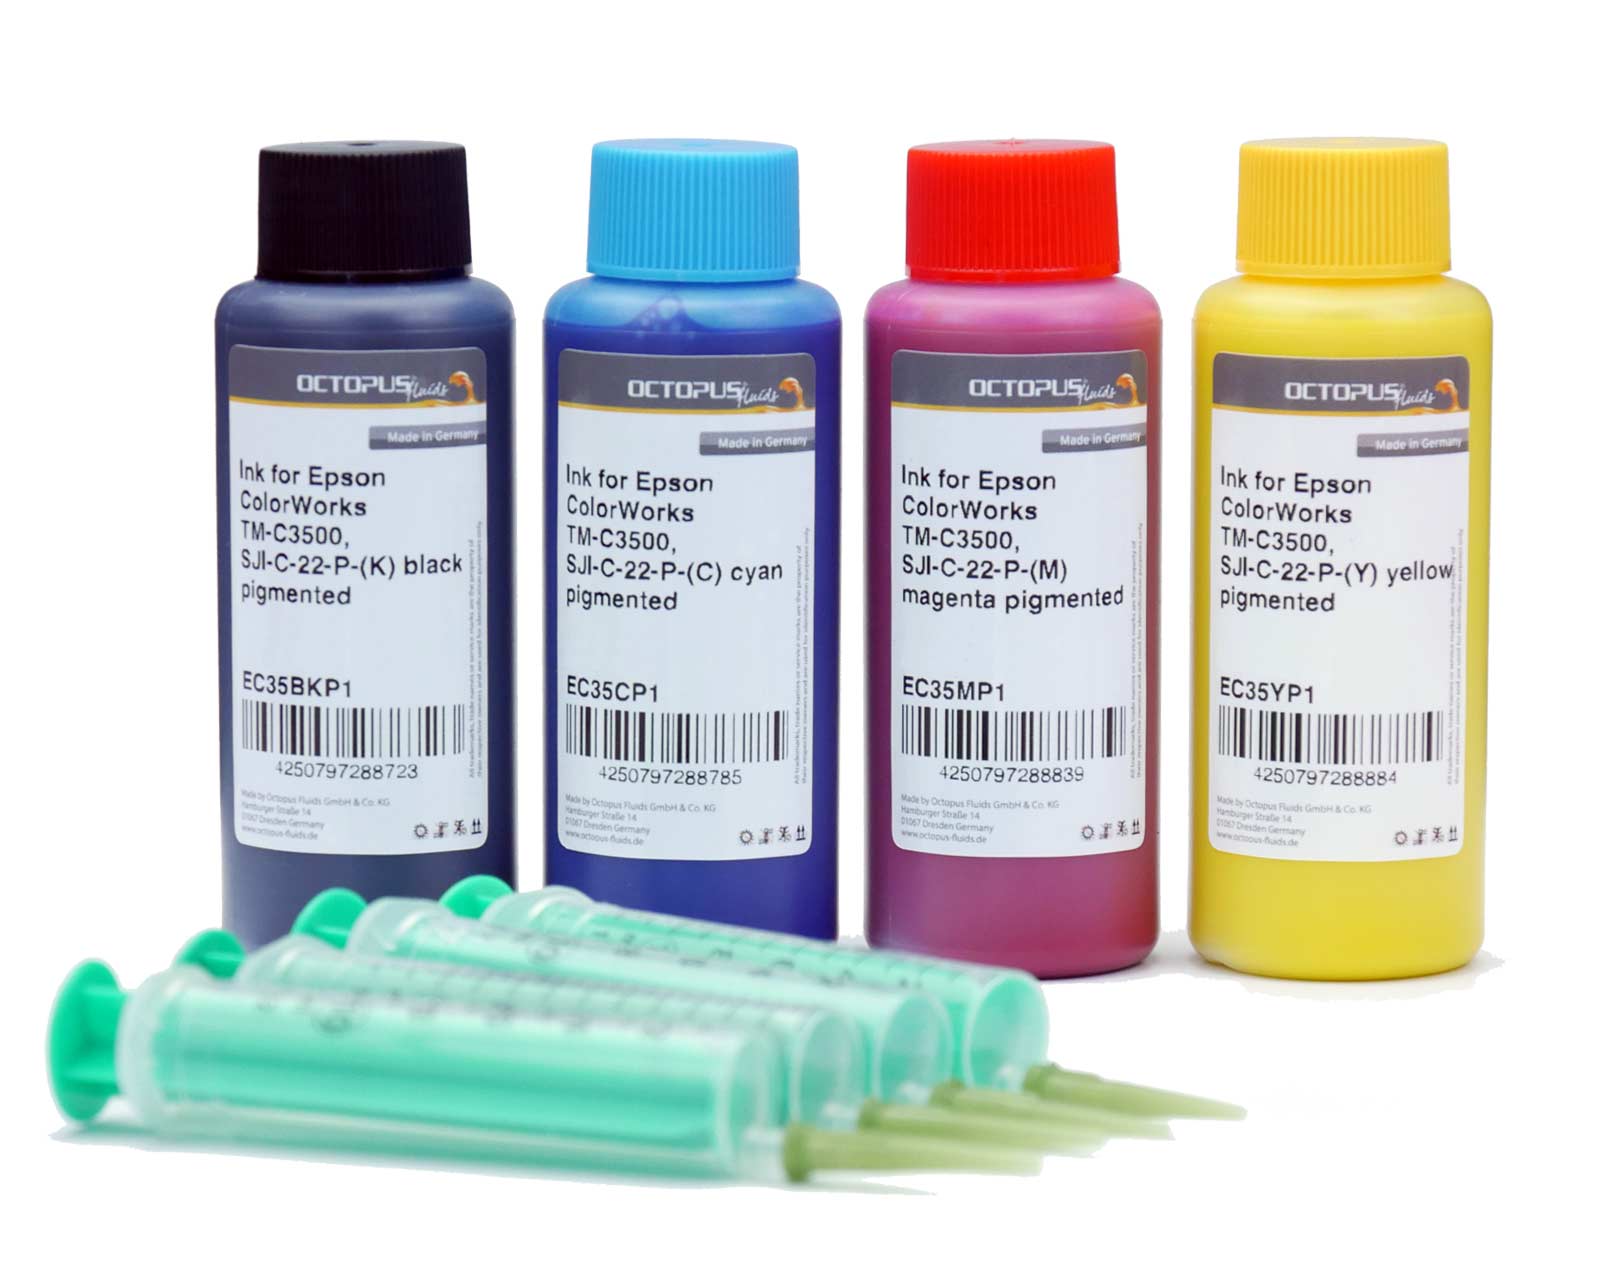 Kit con inchiostri di ricarica per Epson L300, L355, L555 colori, CMYK